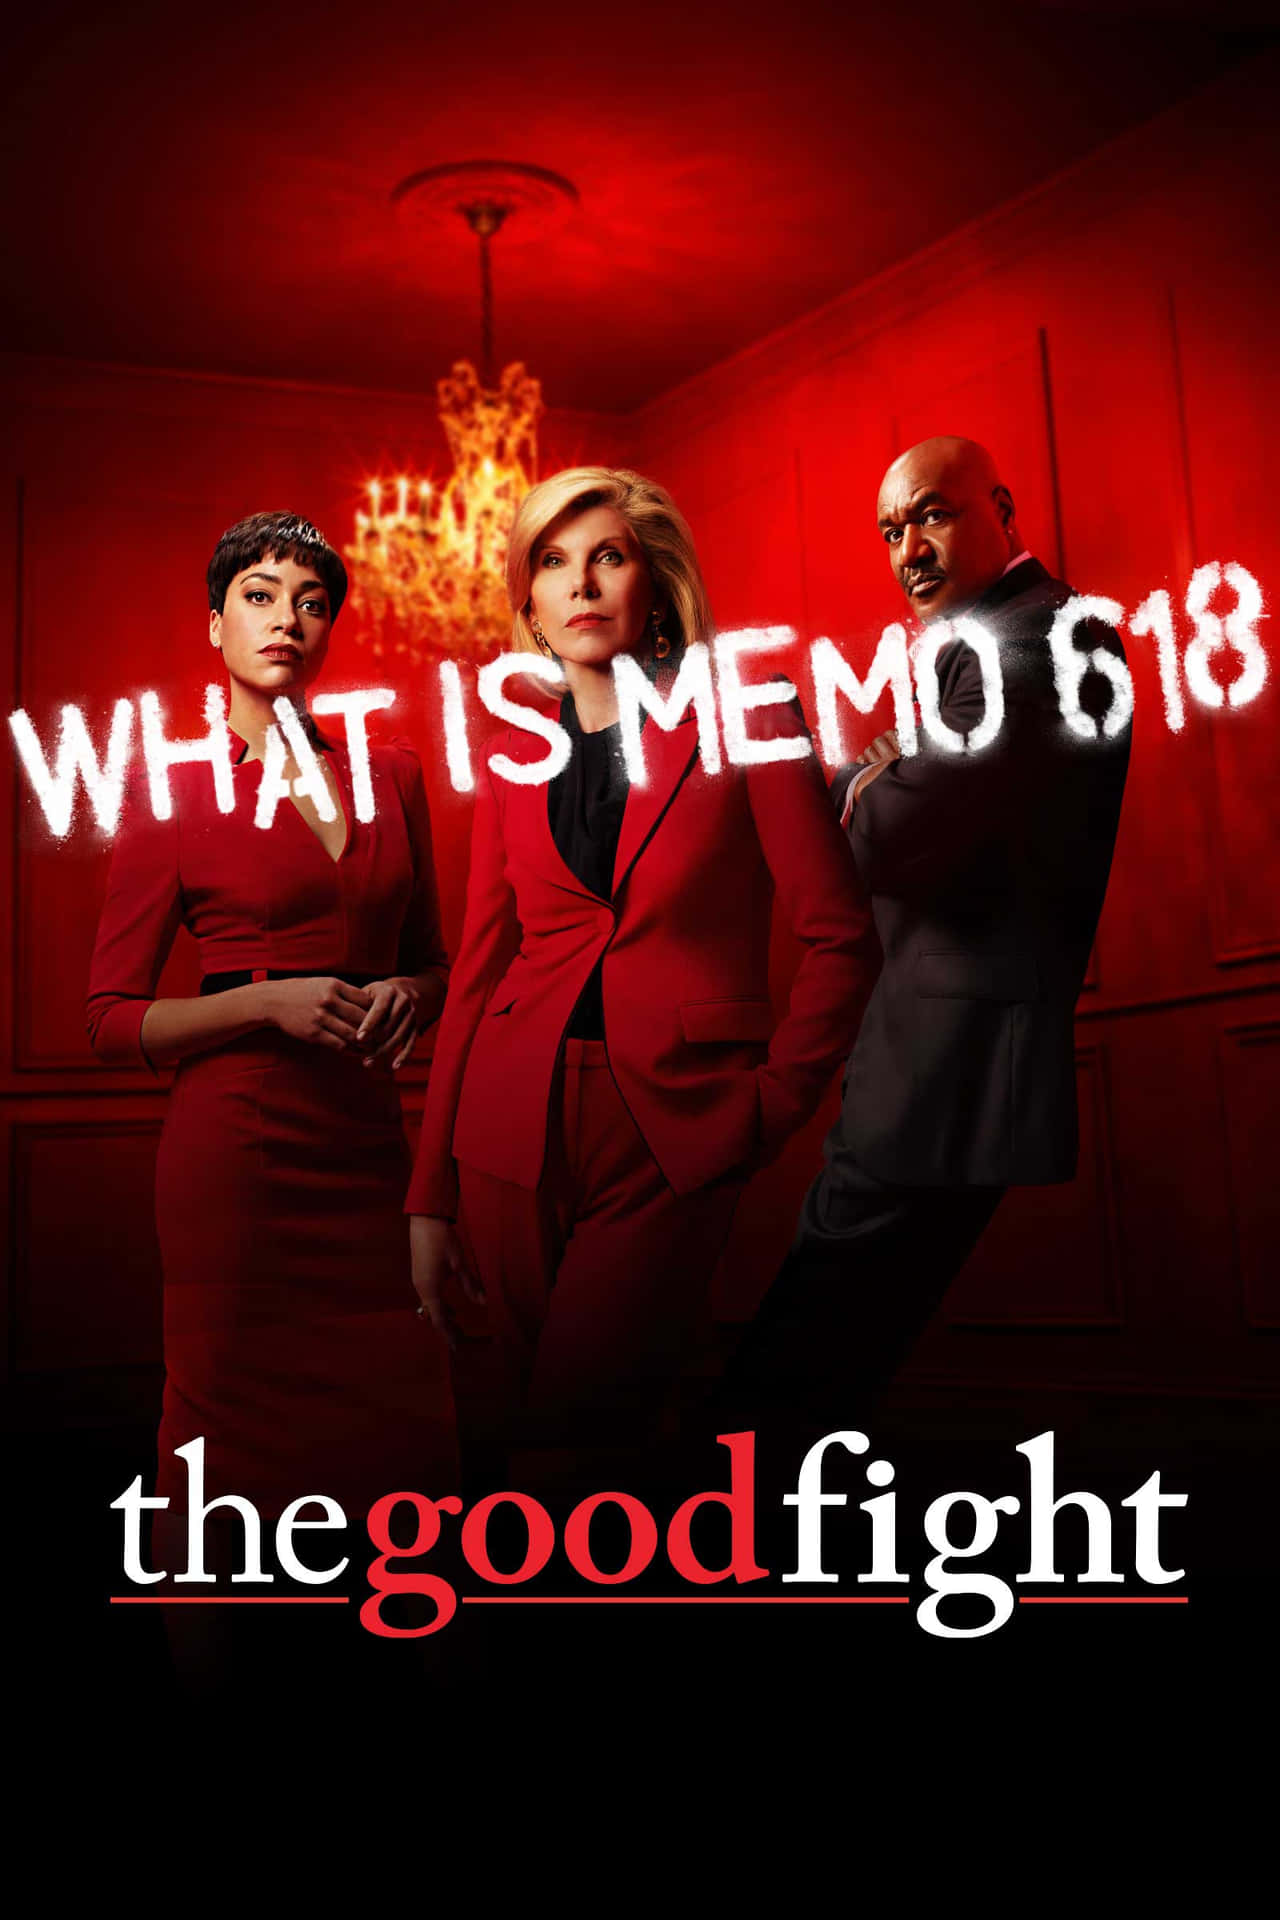 The Good Fight Memo618 Promo Wallpaper